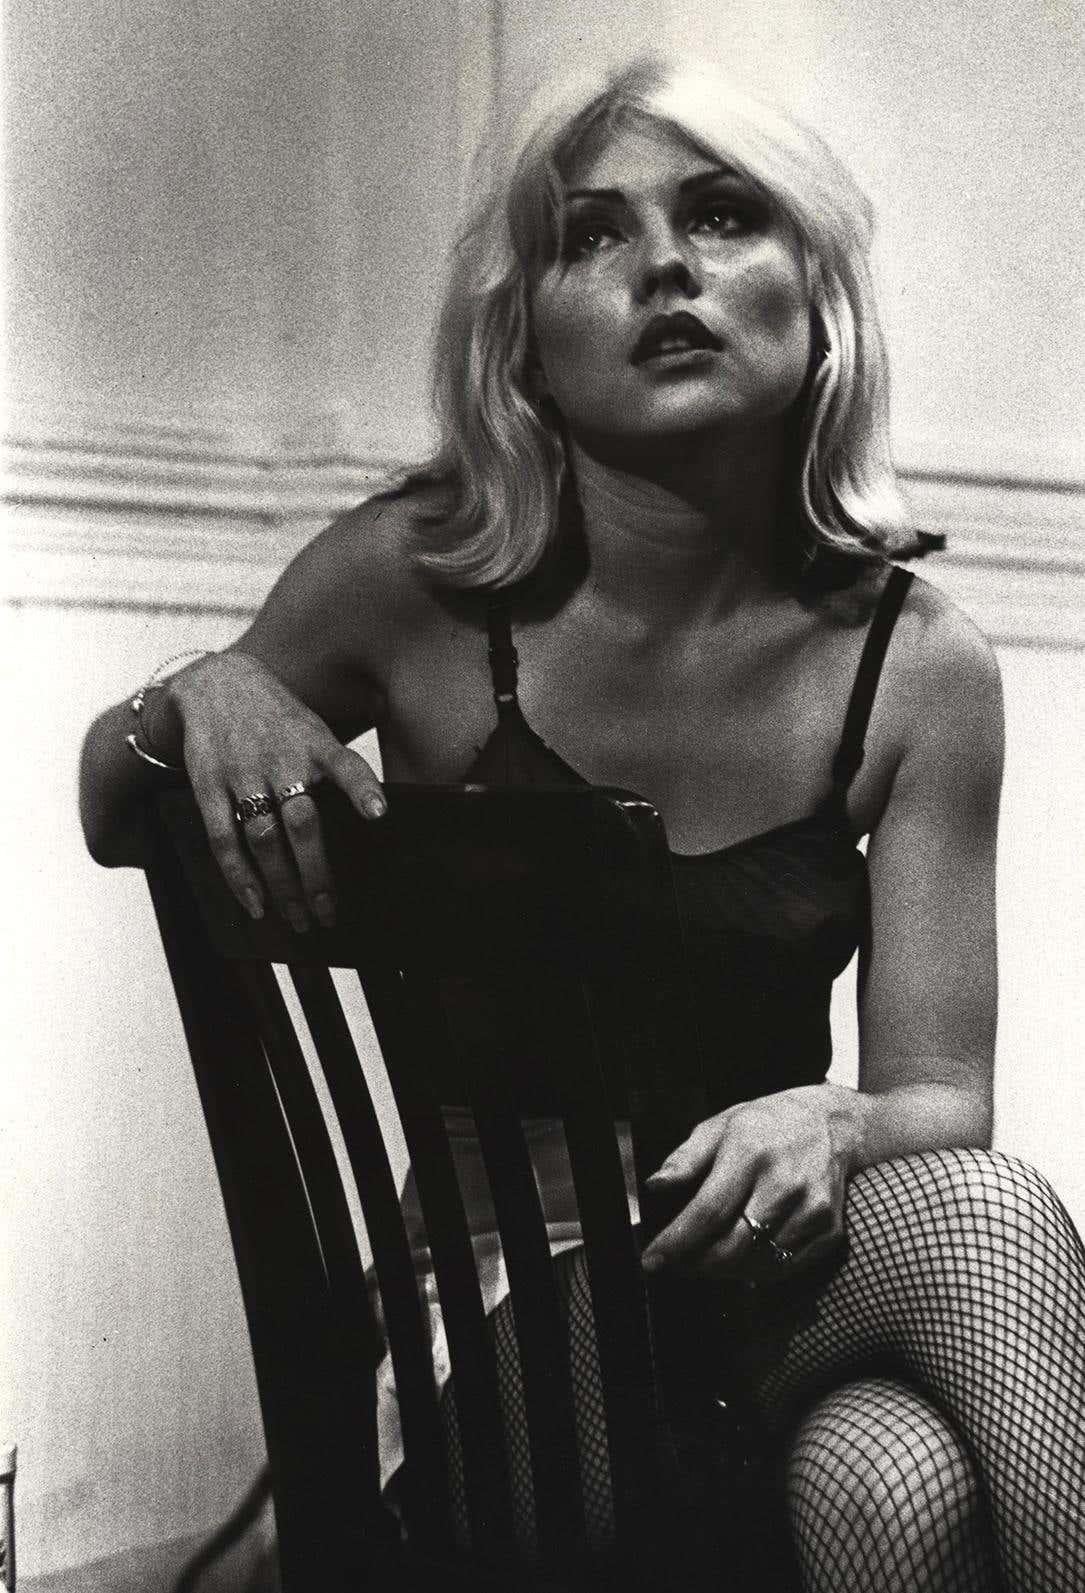 Debbie Harry am Set von Unmade Beds East Village 1976 (Blondie-Fotografie)  (Schwarz), Black and White Photograph, von Fernando Natalici